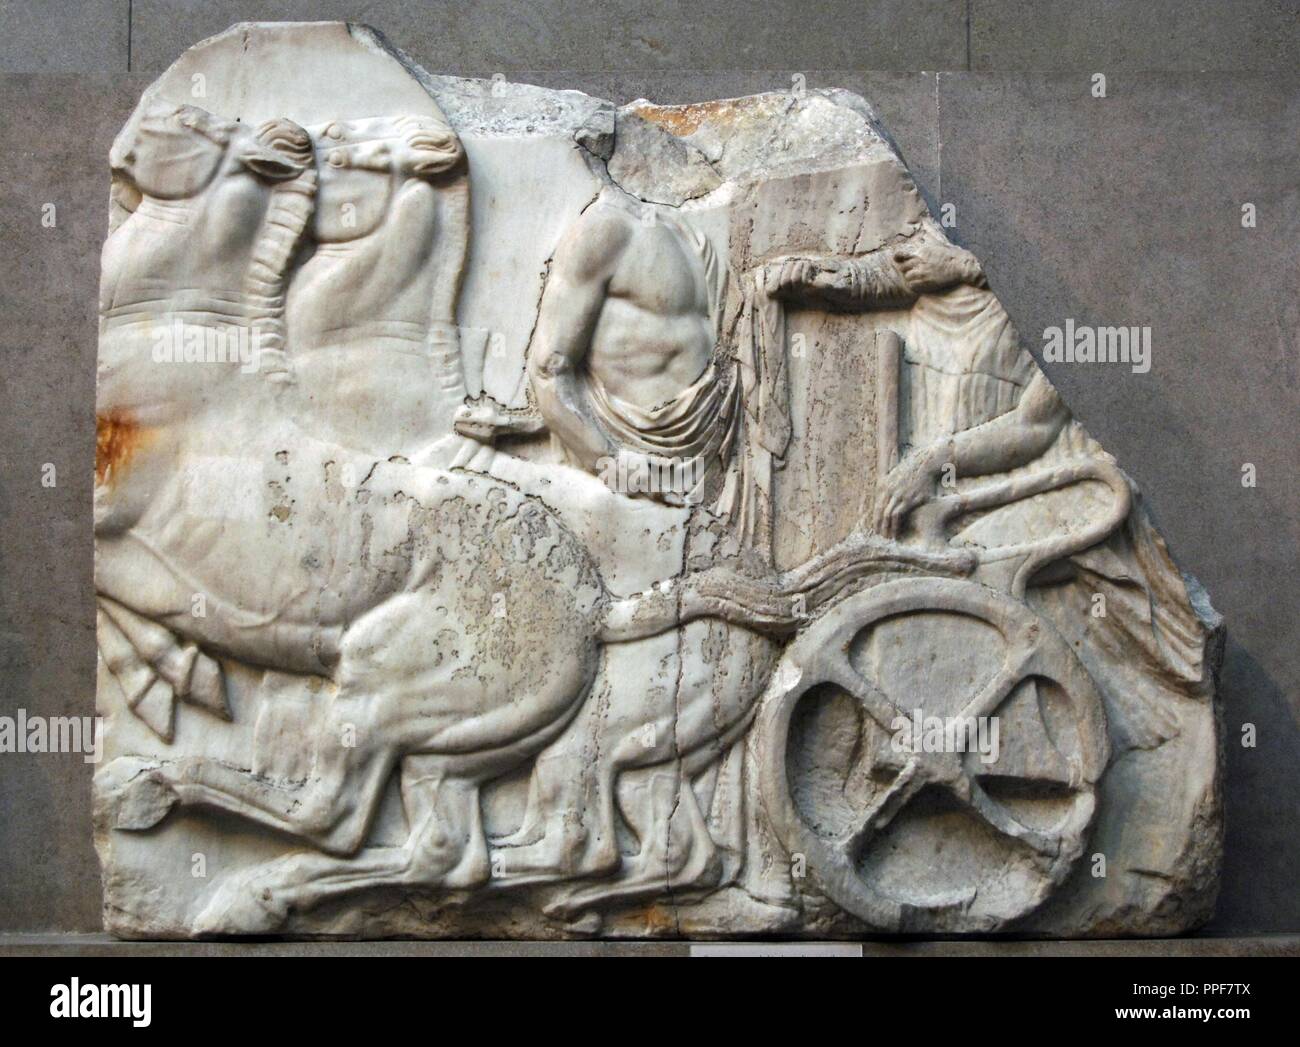 El Arte Griego en Grecia. El Partenón (447-438 a.C). Fragmento del friso del Norte XXIV representando un mariscal detrás de un carro. Museo Británico. Londres. Inglaterra. En el Reino Unido. Foto de stock